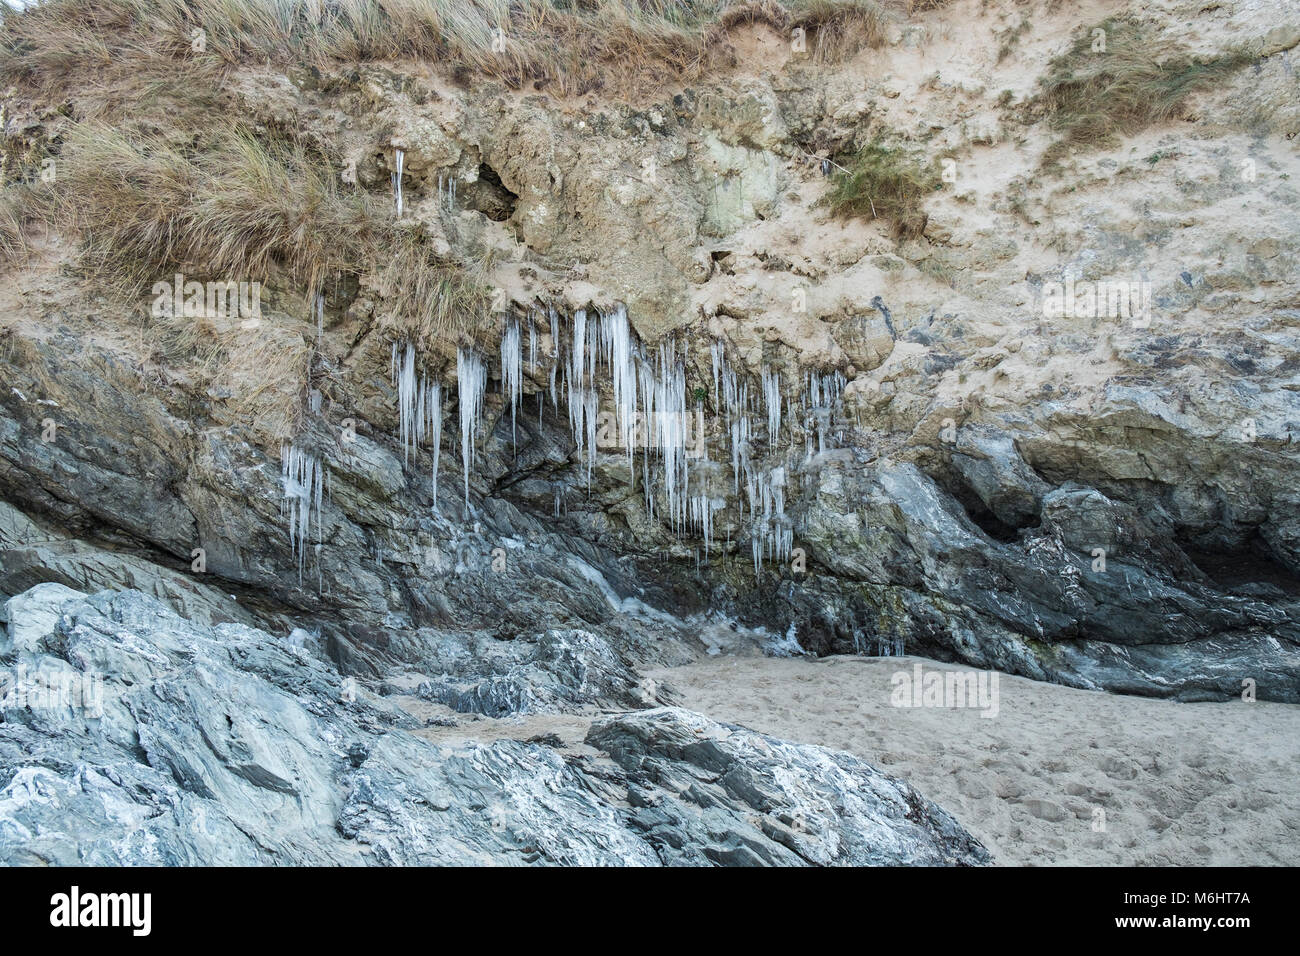 UK Wetter Eiszapfen von Wasser aus dem Grundwasser durch Sanddünen an Crantock Beach in Newquay Cornwall sickert gebildet. Stockfoto